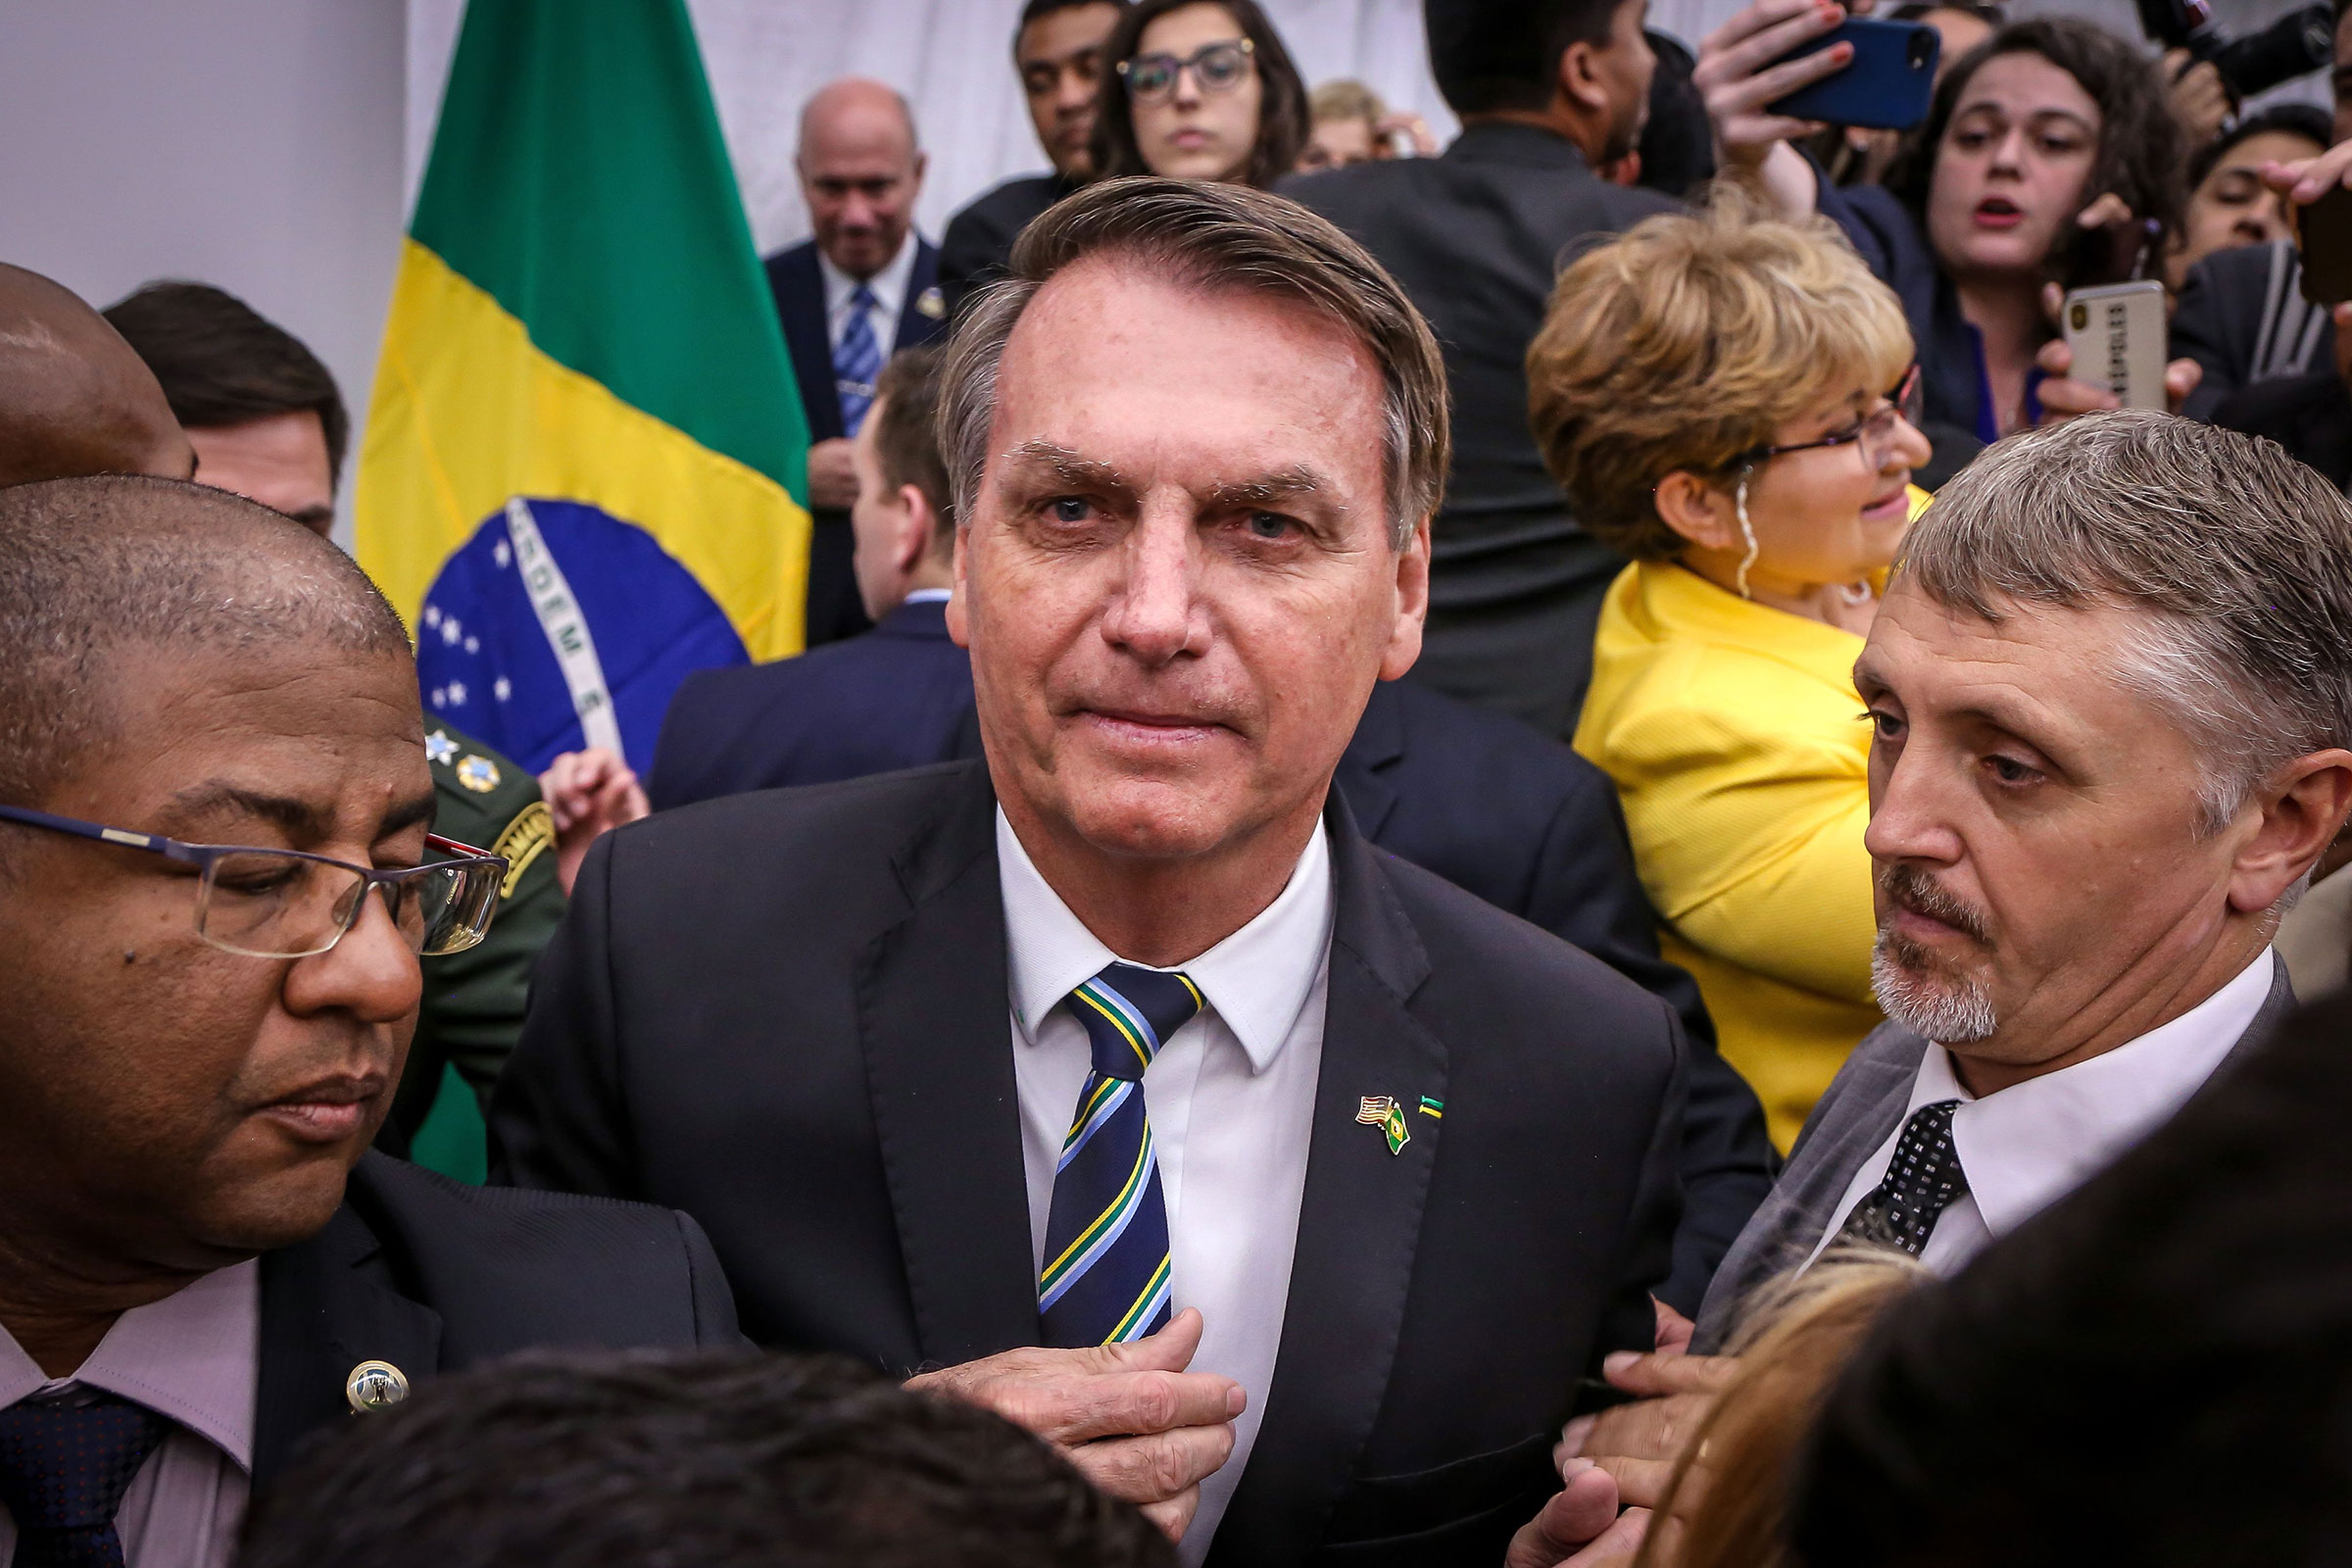 TIME 100 Leaders: Jair Bolsonaro